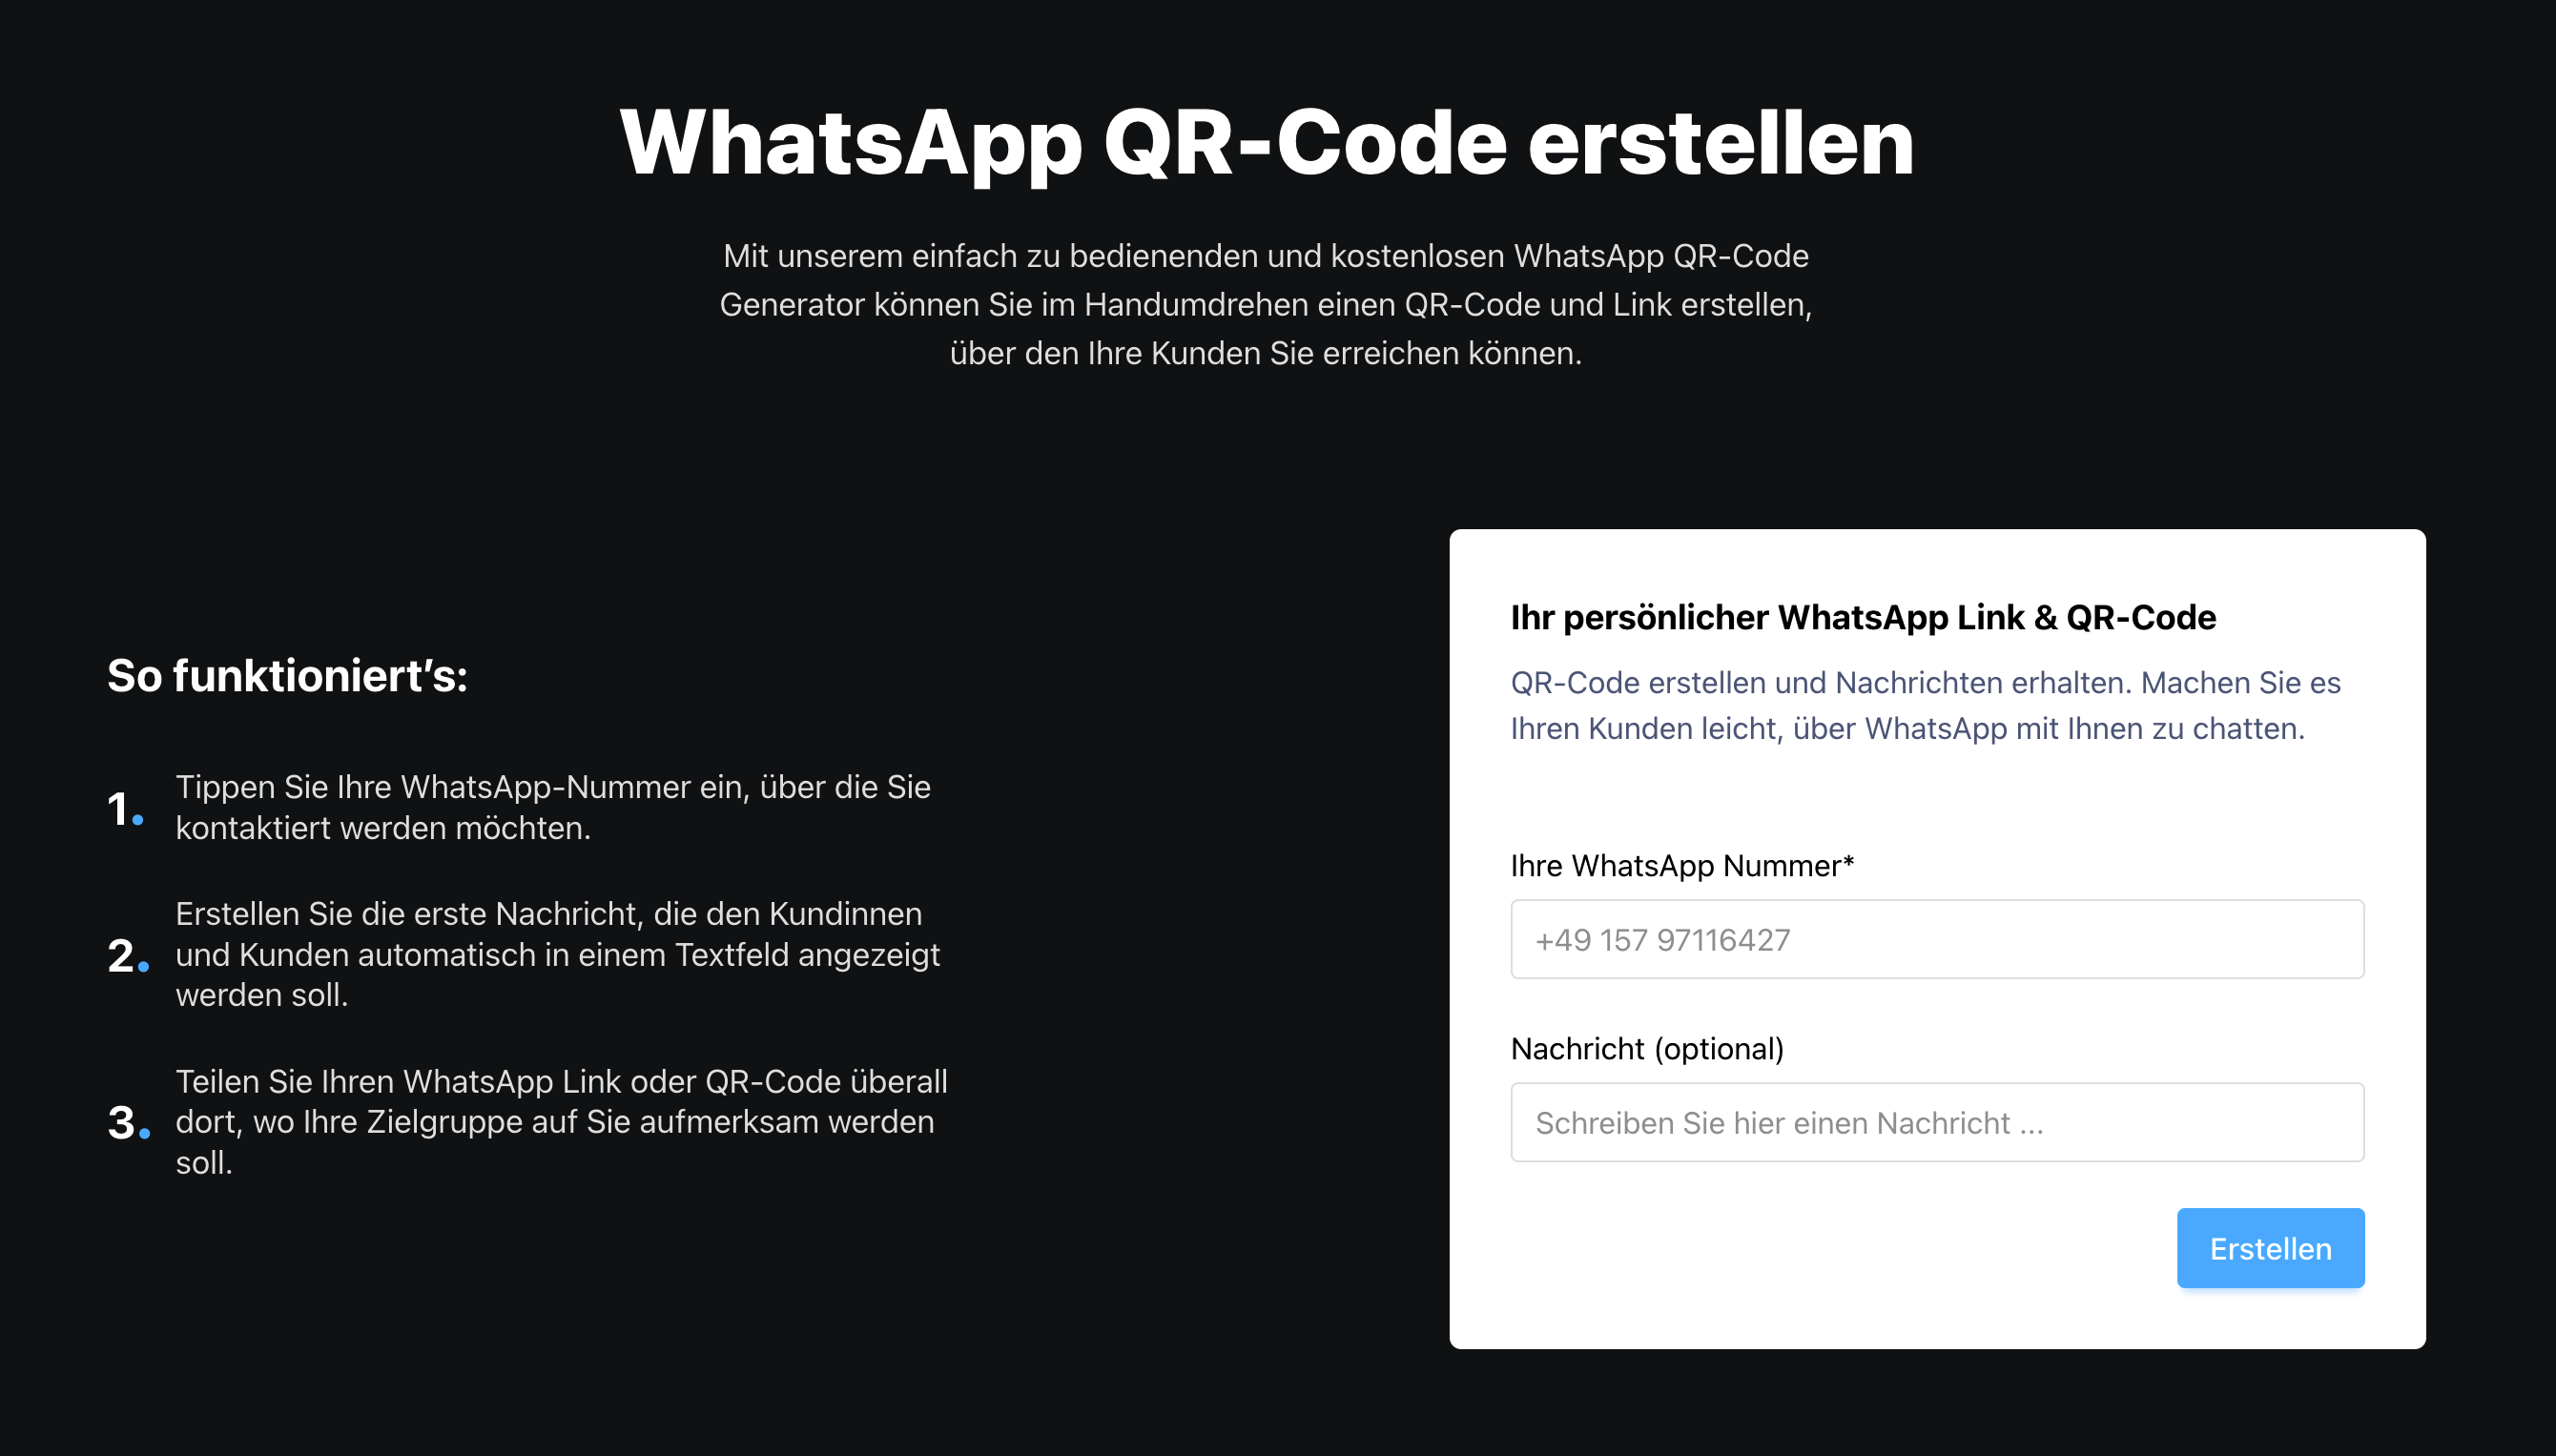 WhatsApp auf der eigenen Webseite einbinden (5 Beispiele) Abbildung 1.png